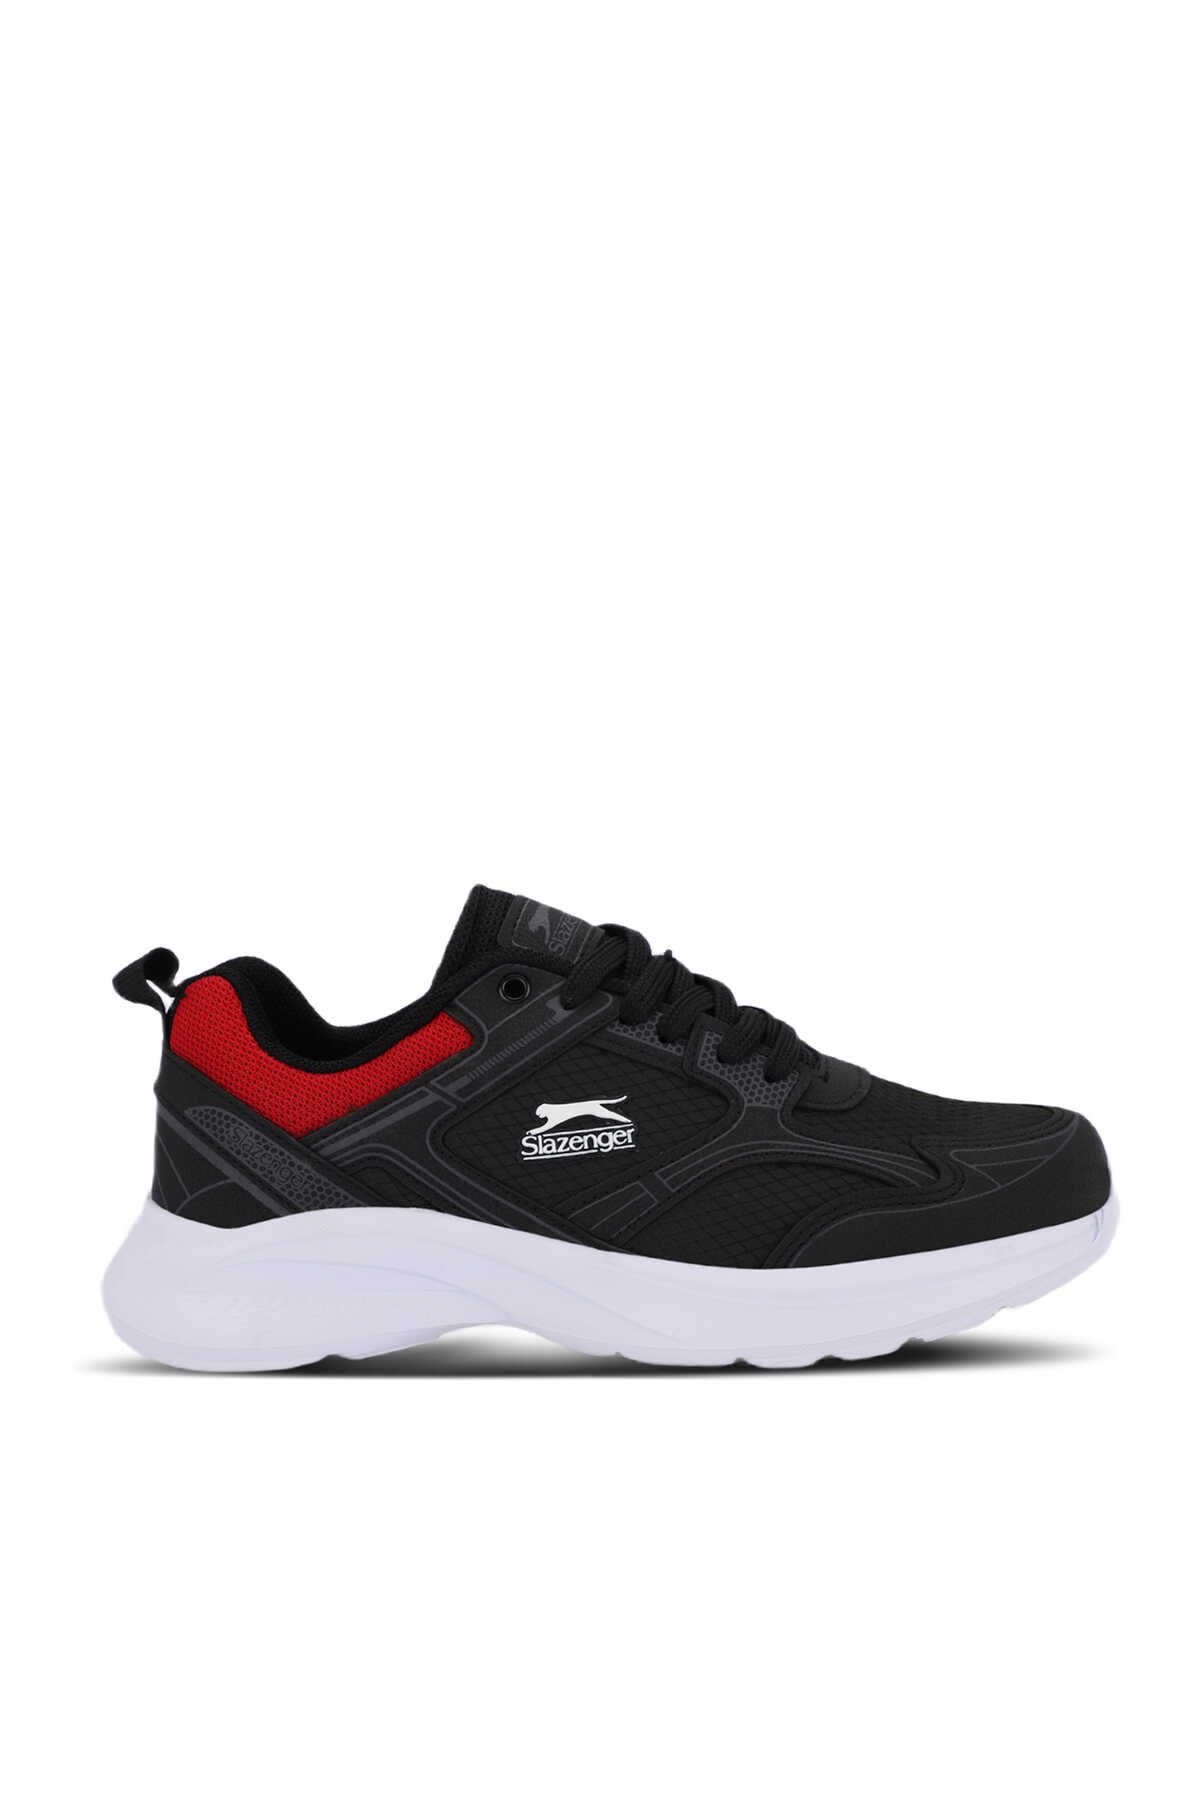 Slazenger - Slazenger GALA I Sneaker Kadın Ayakkabı Siyah / Kırmızı